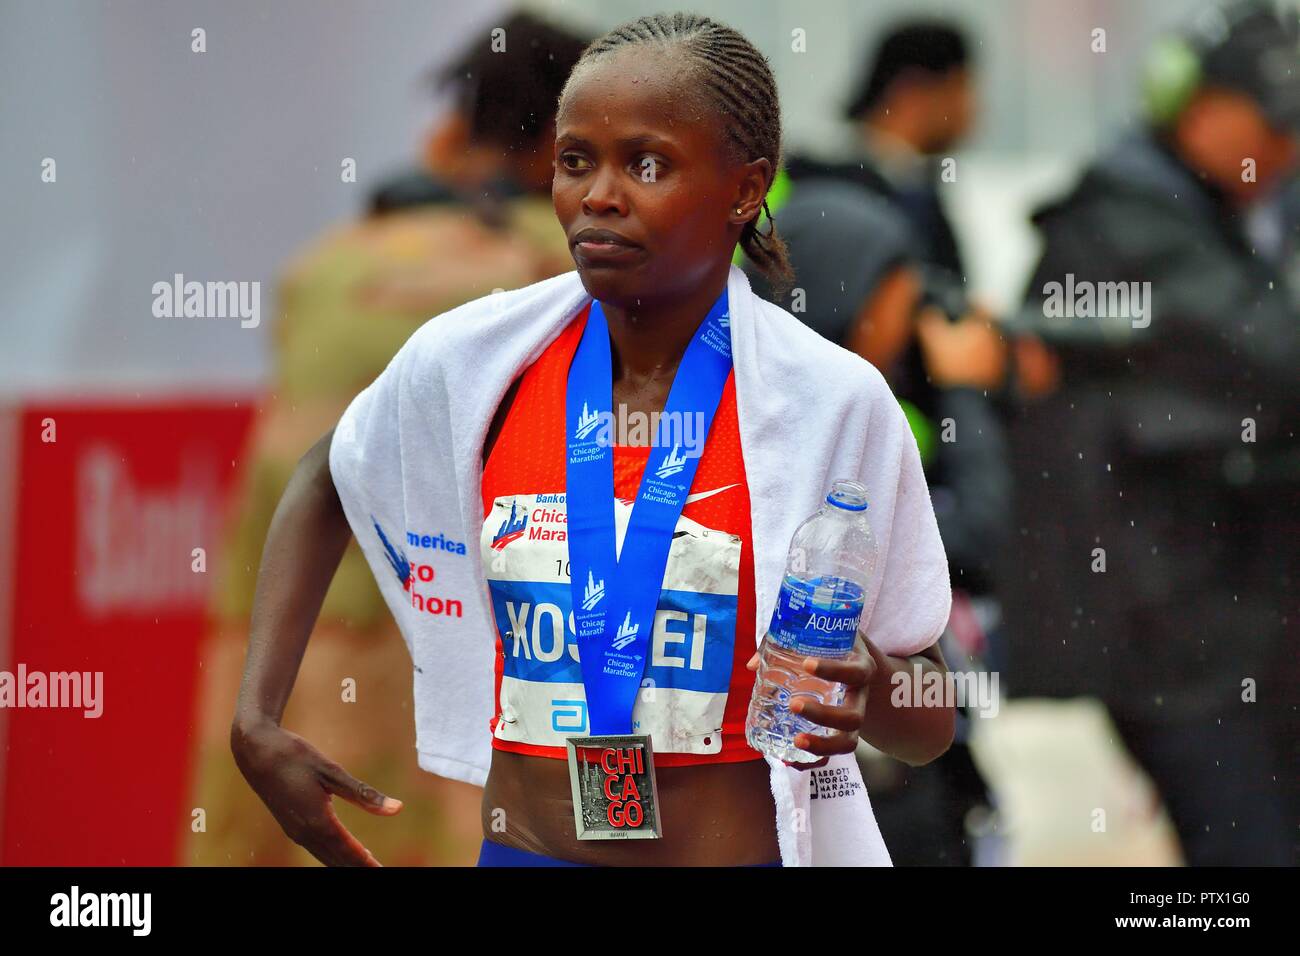 Chicago, Illinois, USA. Nach dem Überqueren der Ziellinie und Empfangen hier gewinnenden Medaille, der 2018 Chicago Marathon Frauen Meister Brigid Kosgei. Stockfoto